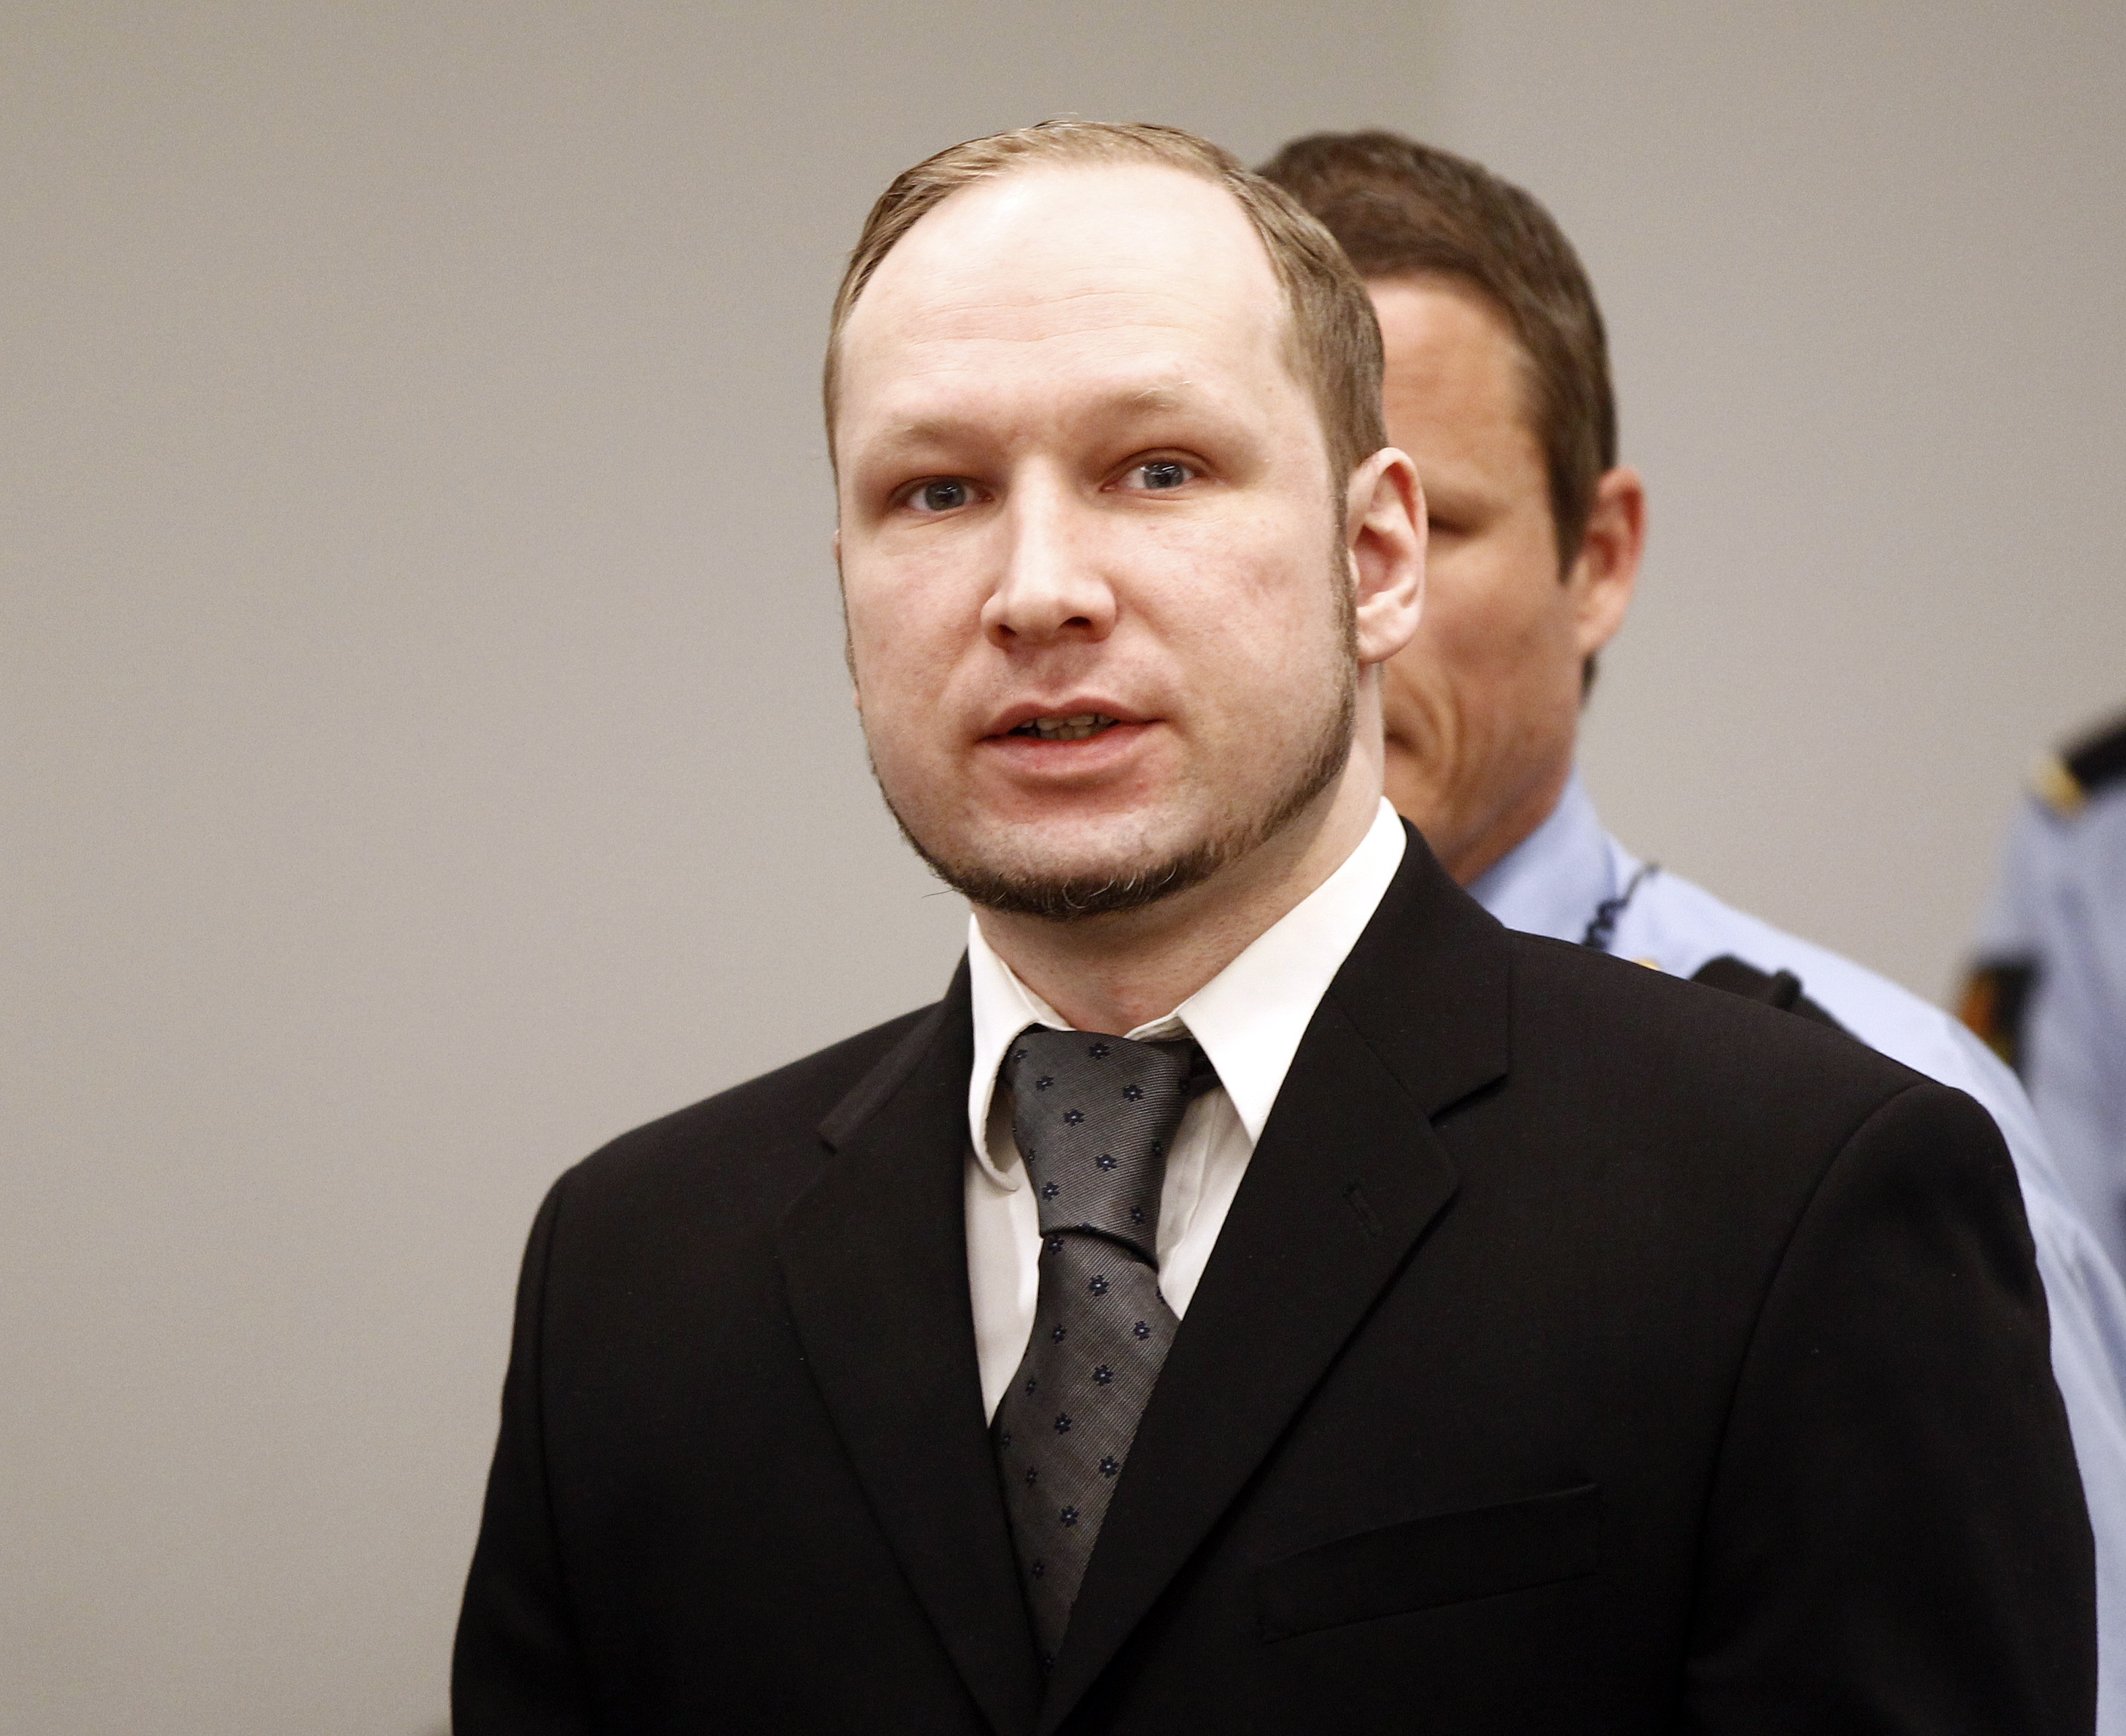 33 av de 69 personer som Breivik dödade på Utöya var under 18 år.